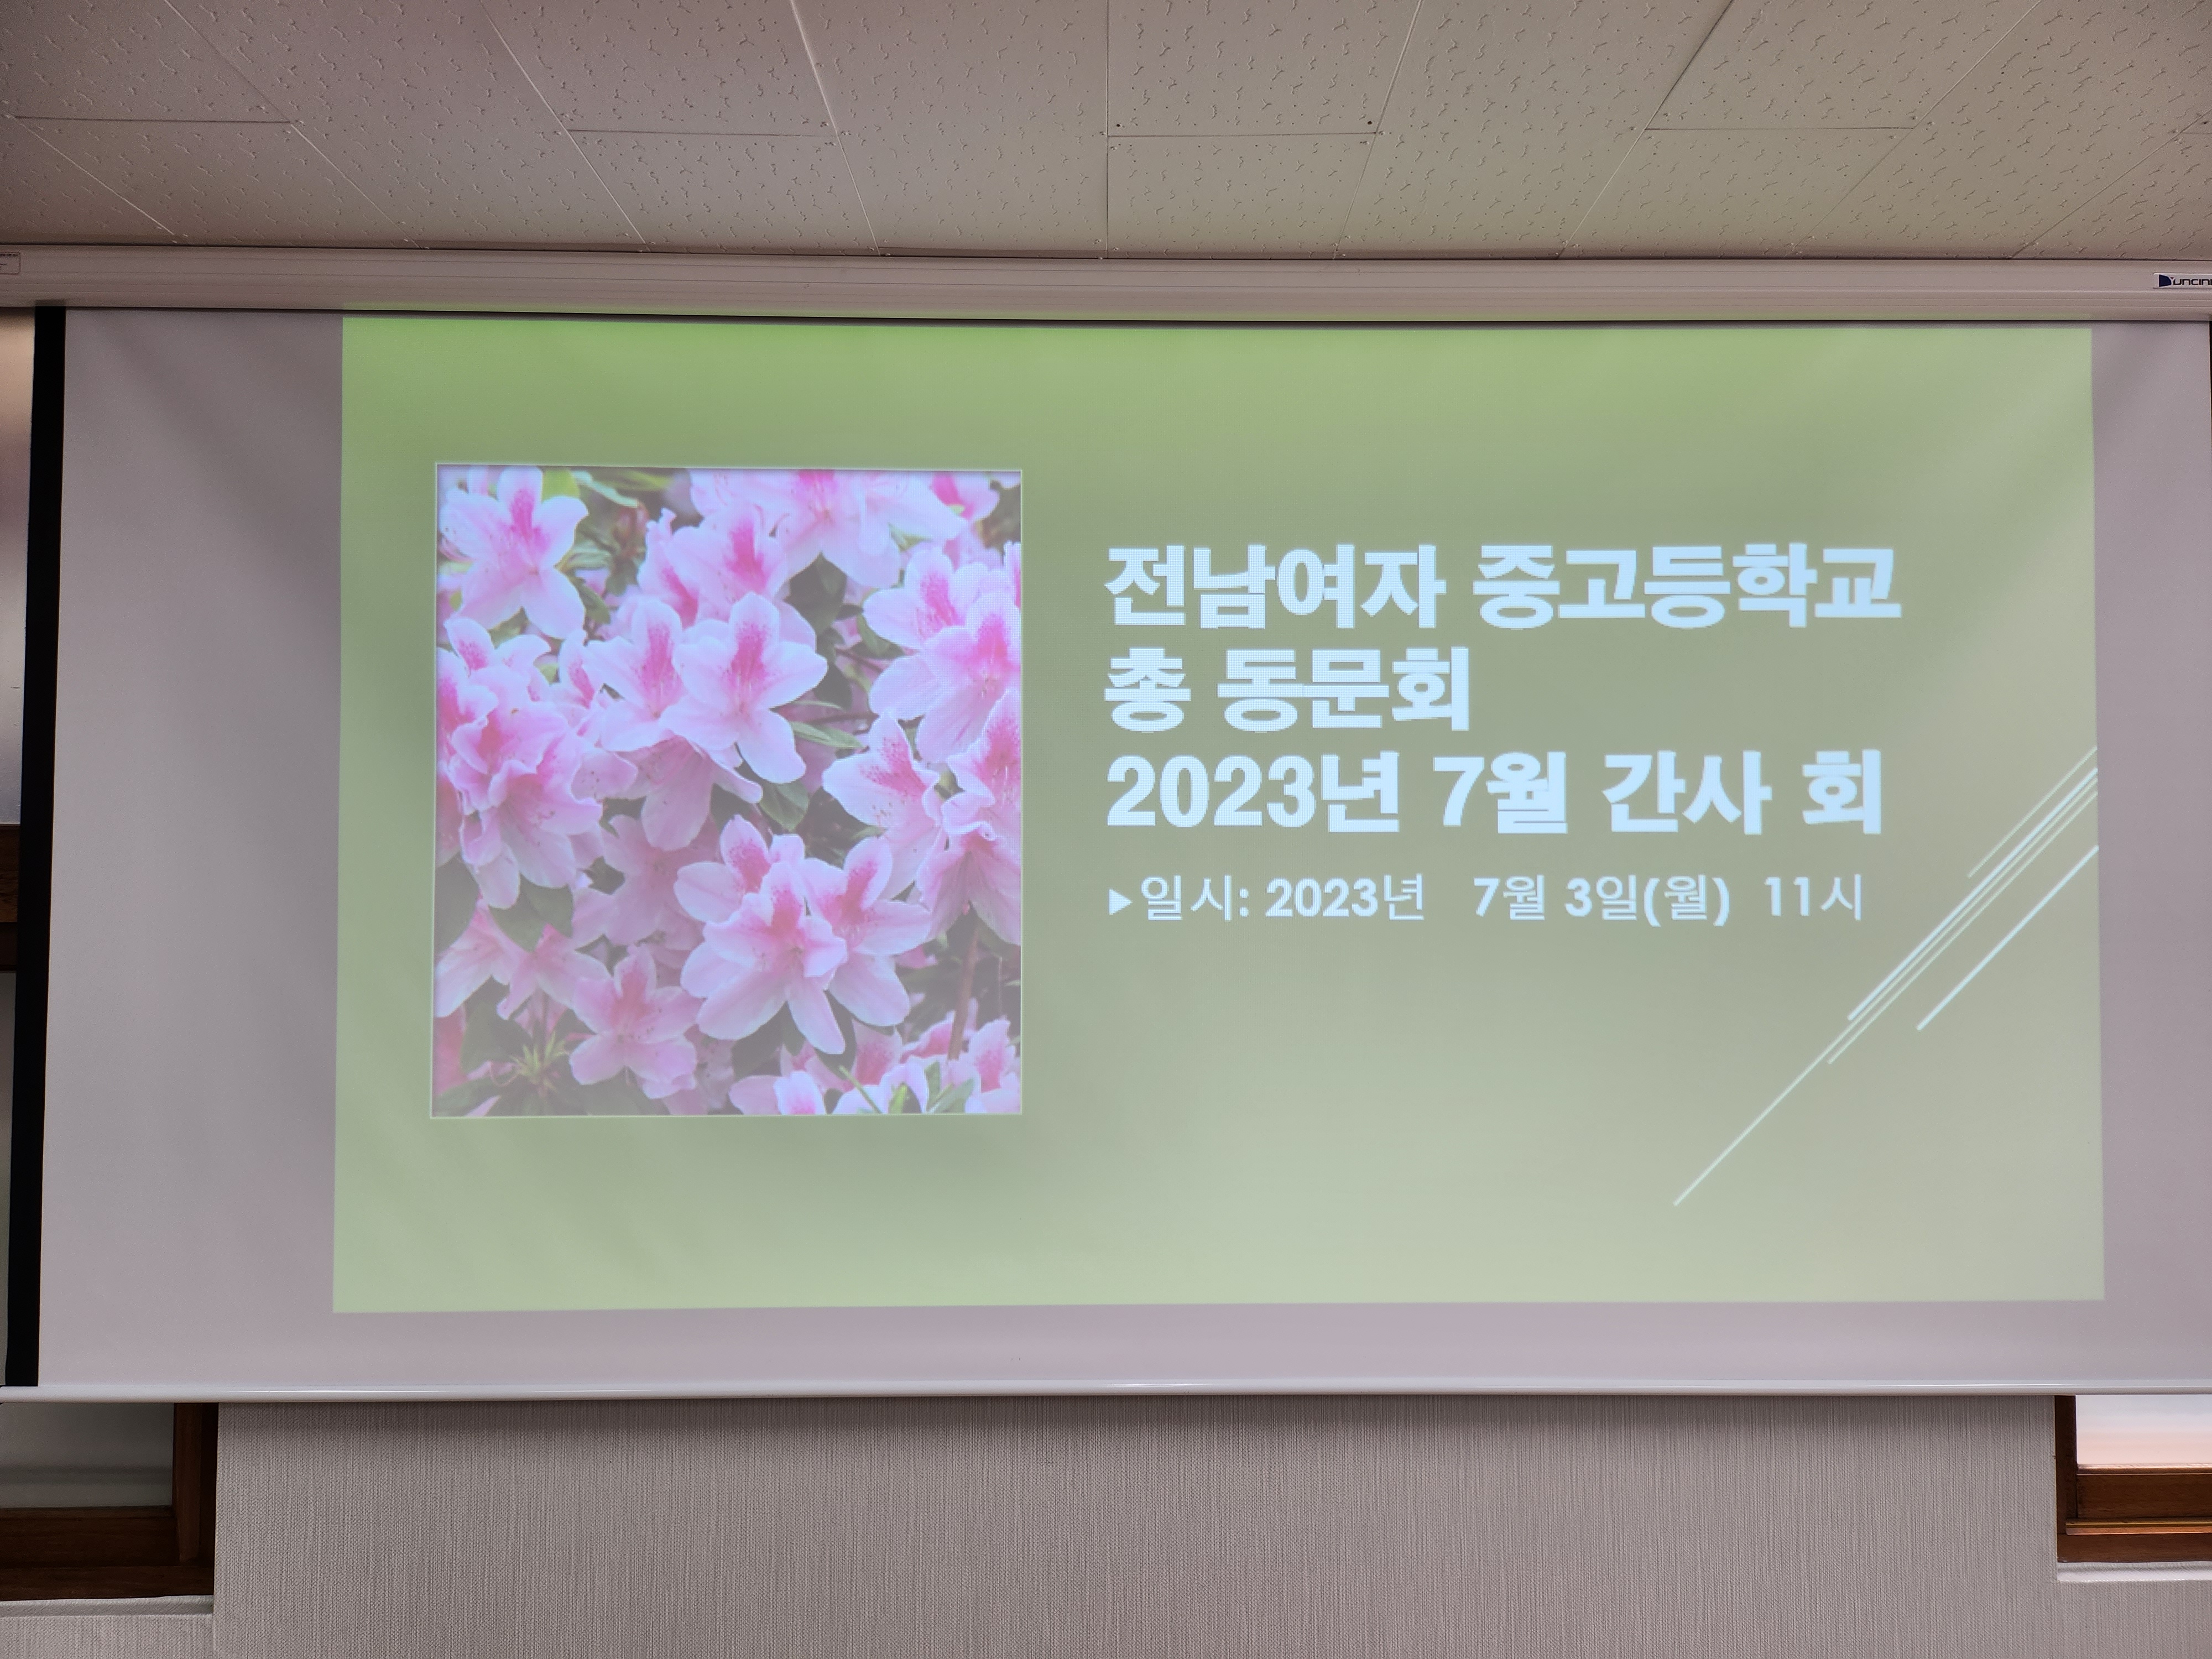 2023년 7월 정기간사회 개최